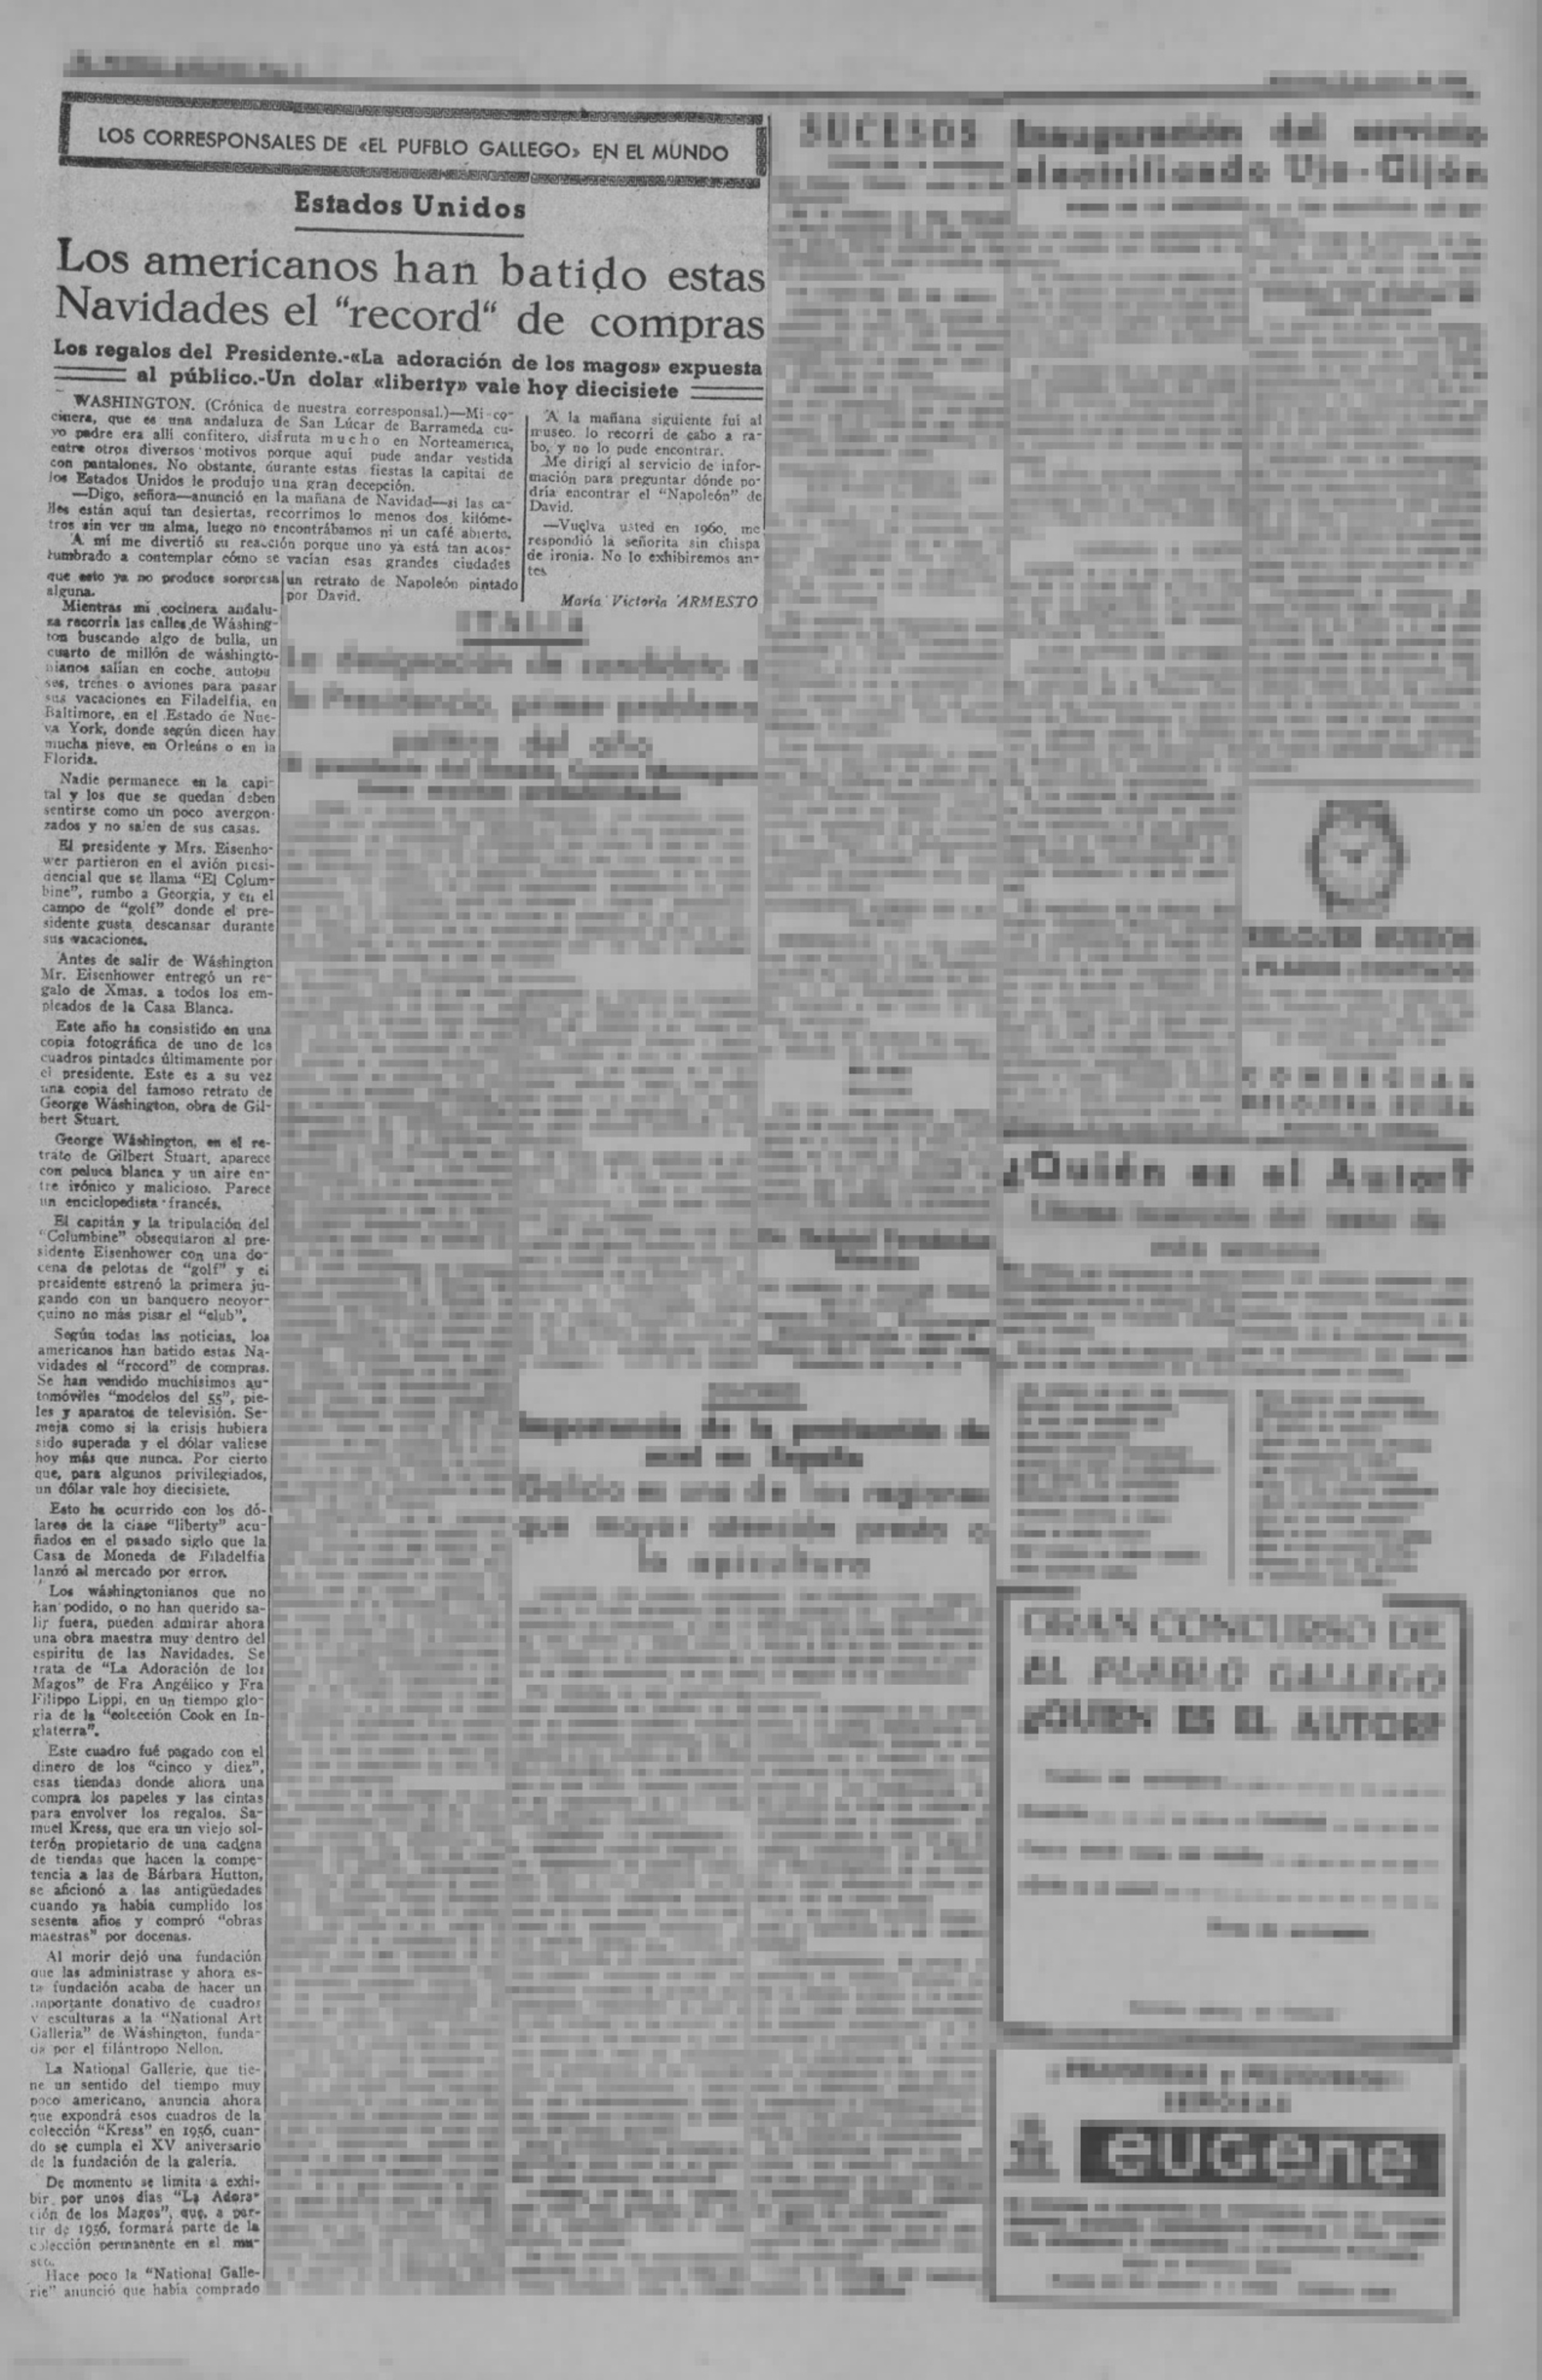 El Pueblo Gallego 1955 - Récord compras navidad